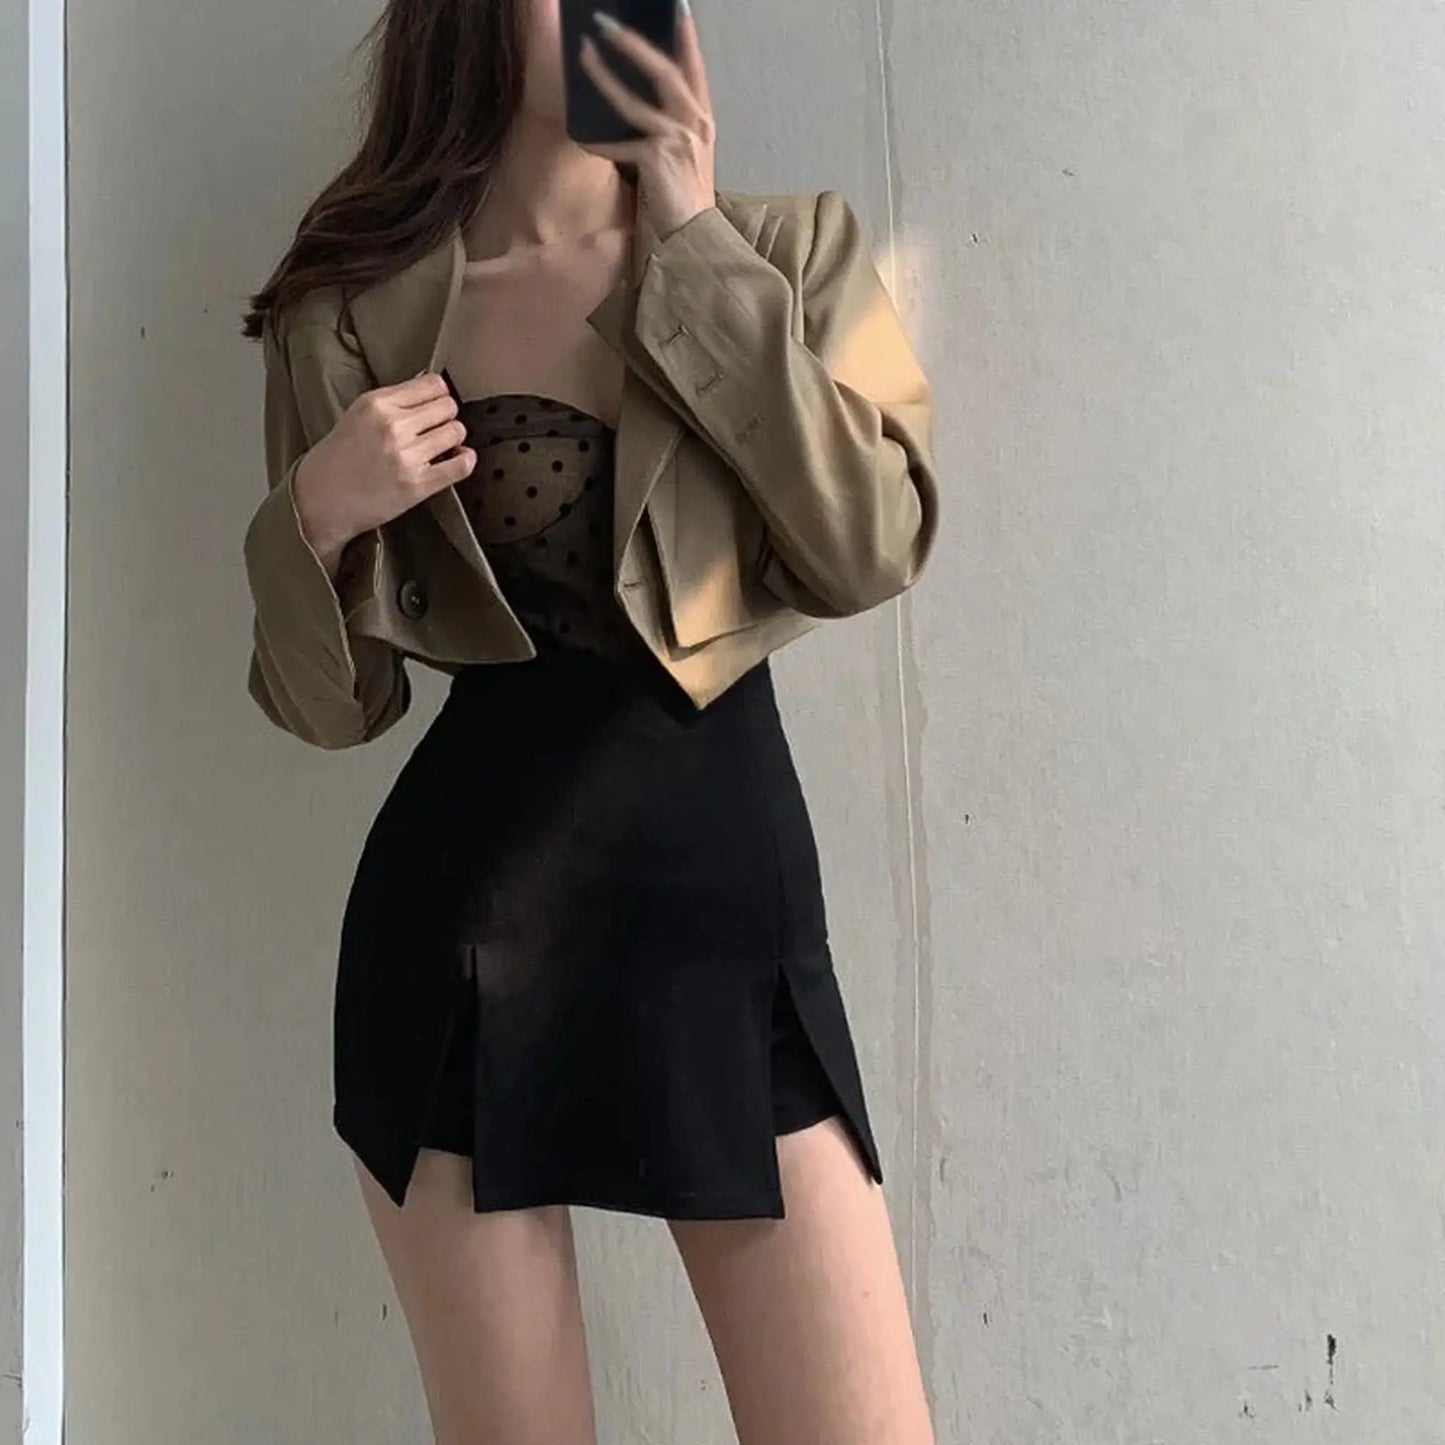 Mujer con minifalda abierta por delante se hace selfie de su conjunto con chaqueta